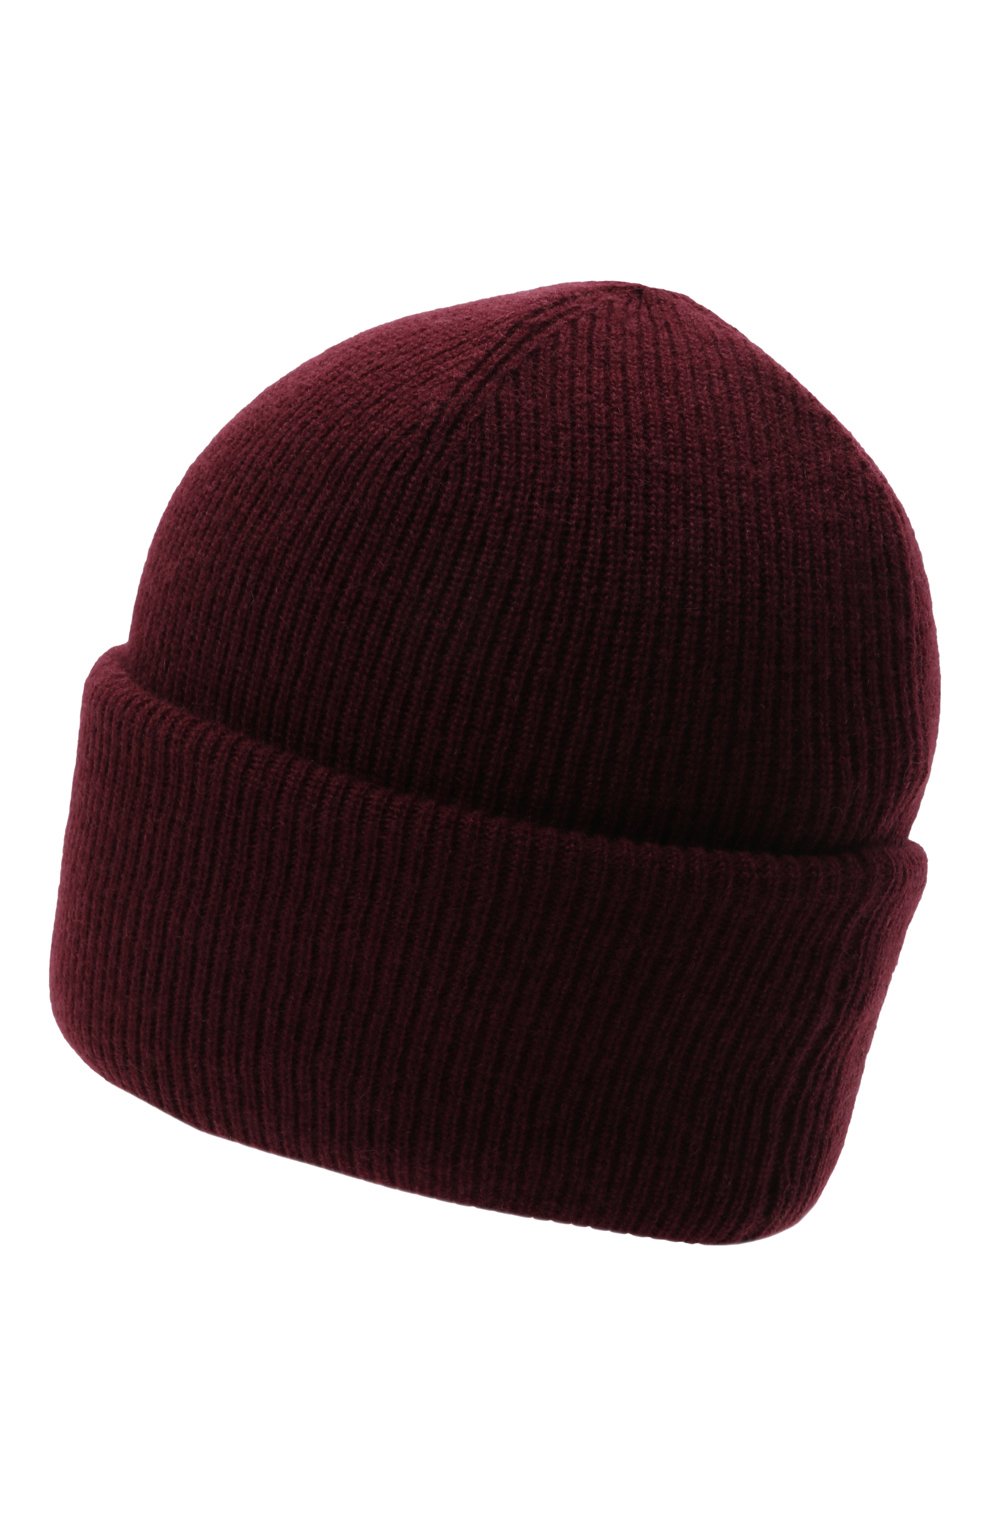 Женская шапка из шерсти и кашемира INVERNI бордового цвета, арт. 5364 CM | Фото 3 (Материал: Текстиль, Кашемир, Шерсть)